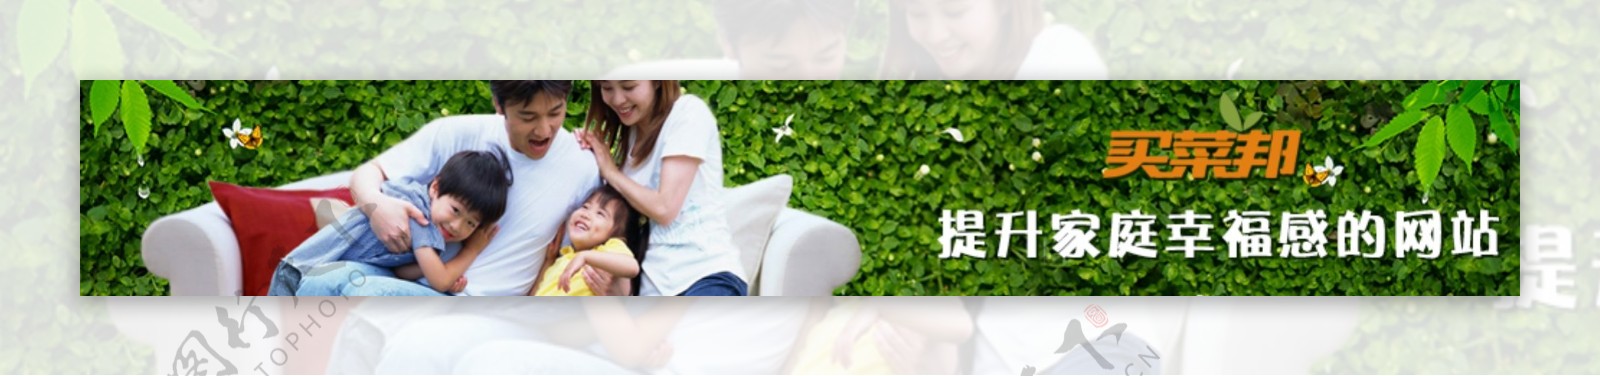 买菜邦提升家庭幸福感的网站banner